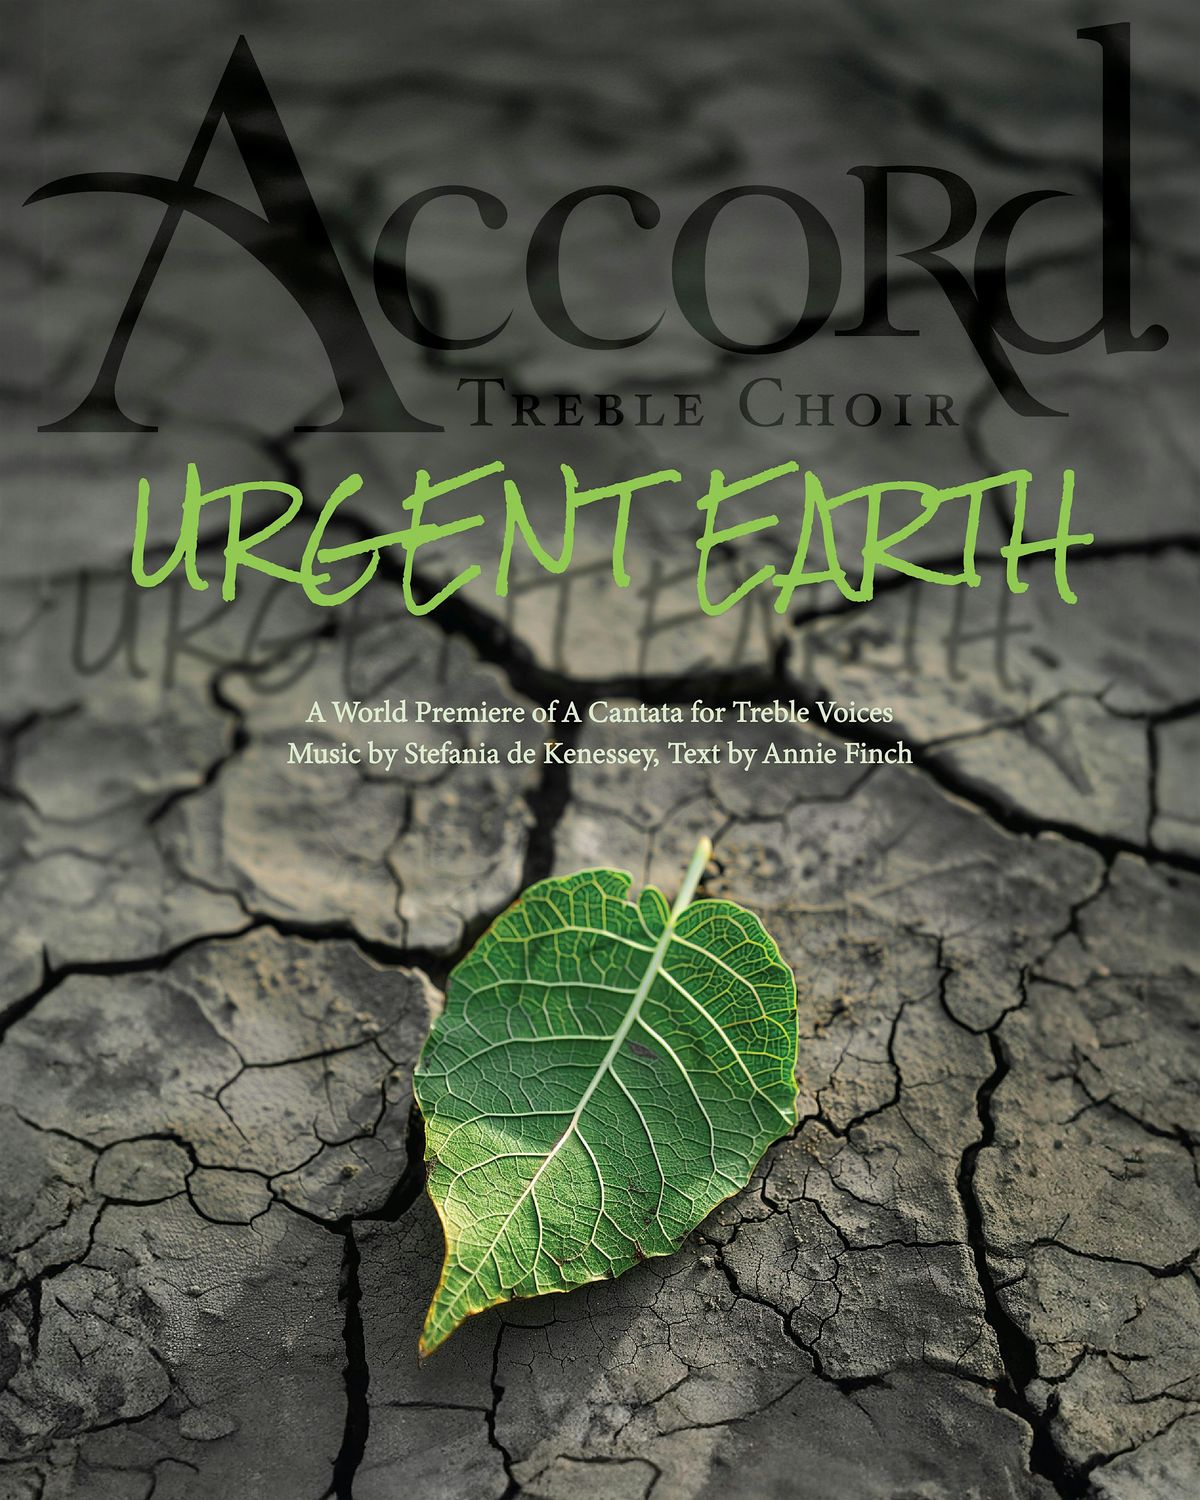 Accord Treble Choir presents: Urgent Earth (Brooklyn)